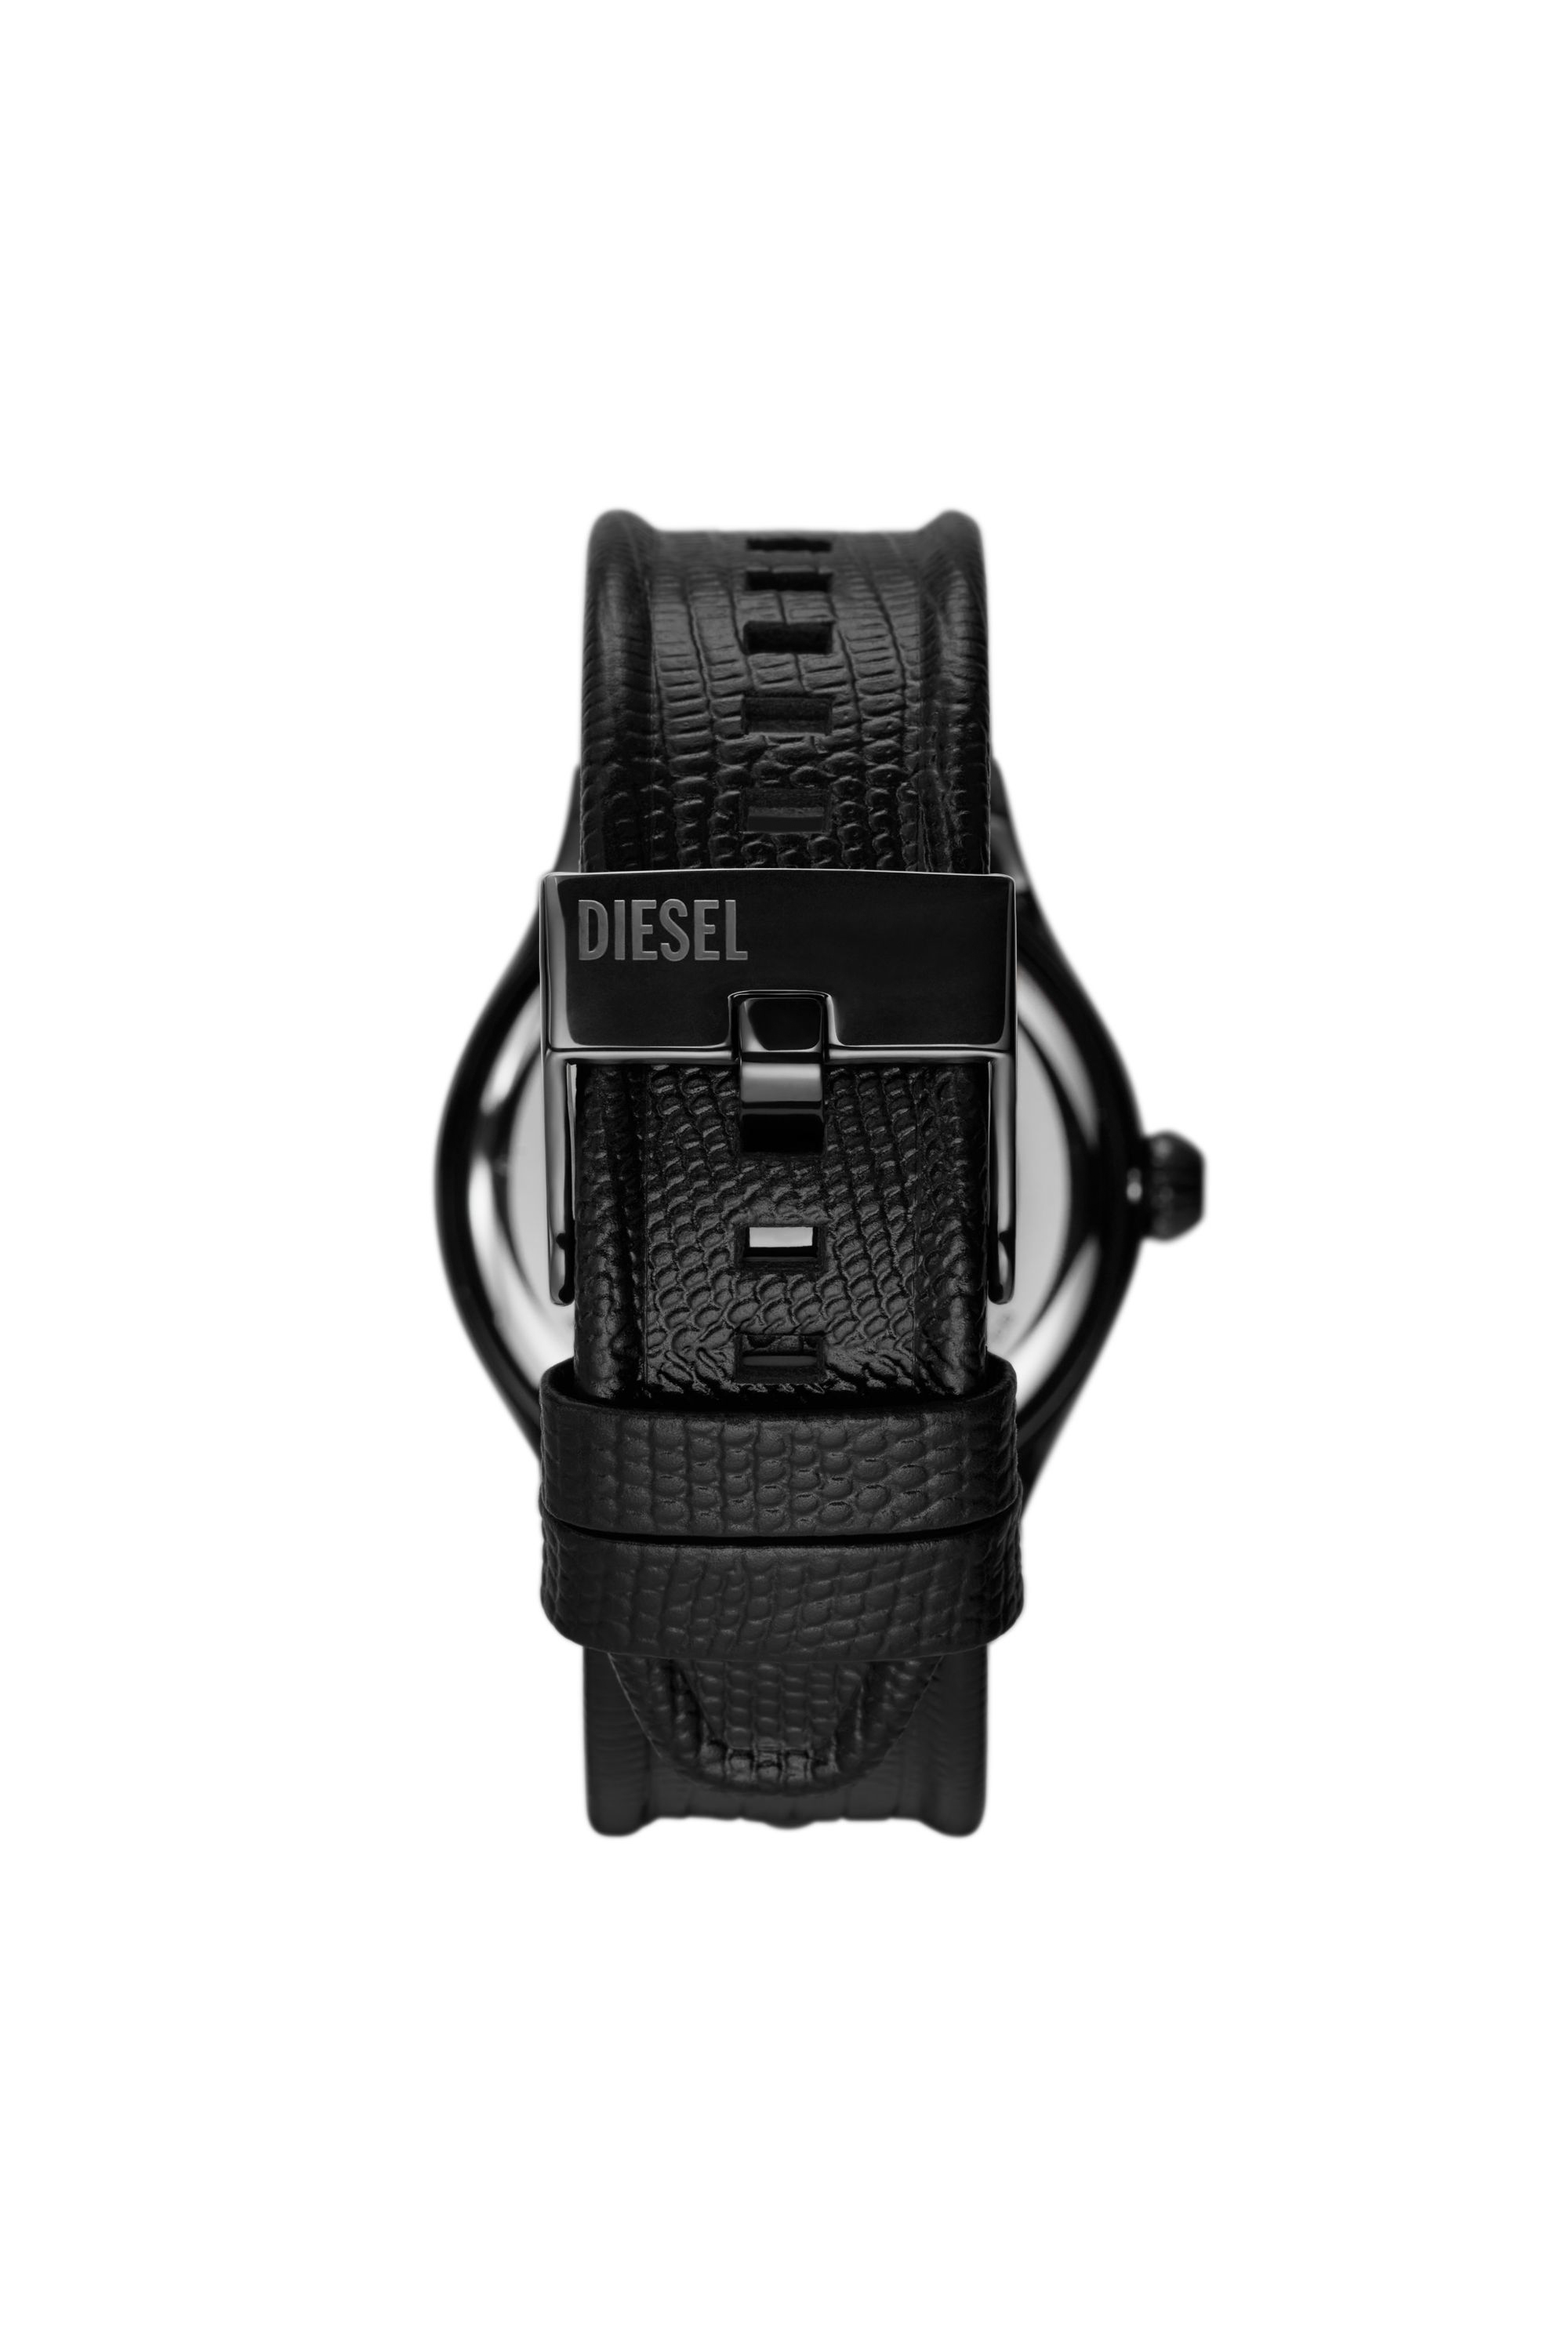 Diesel - DZ2193, Male 腕時計 in ブラック - Image 2